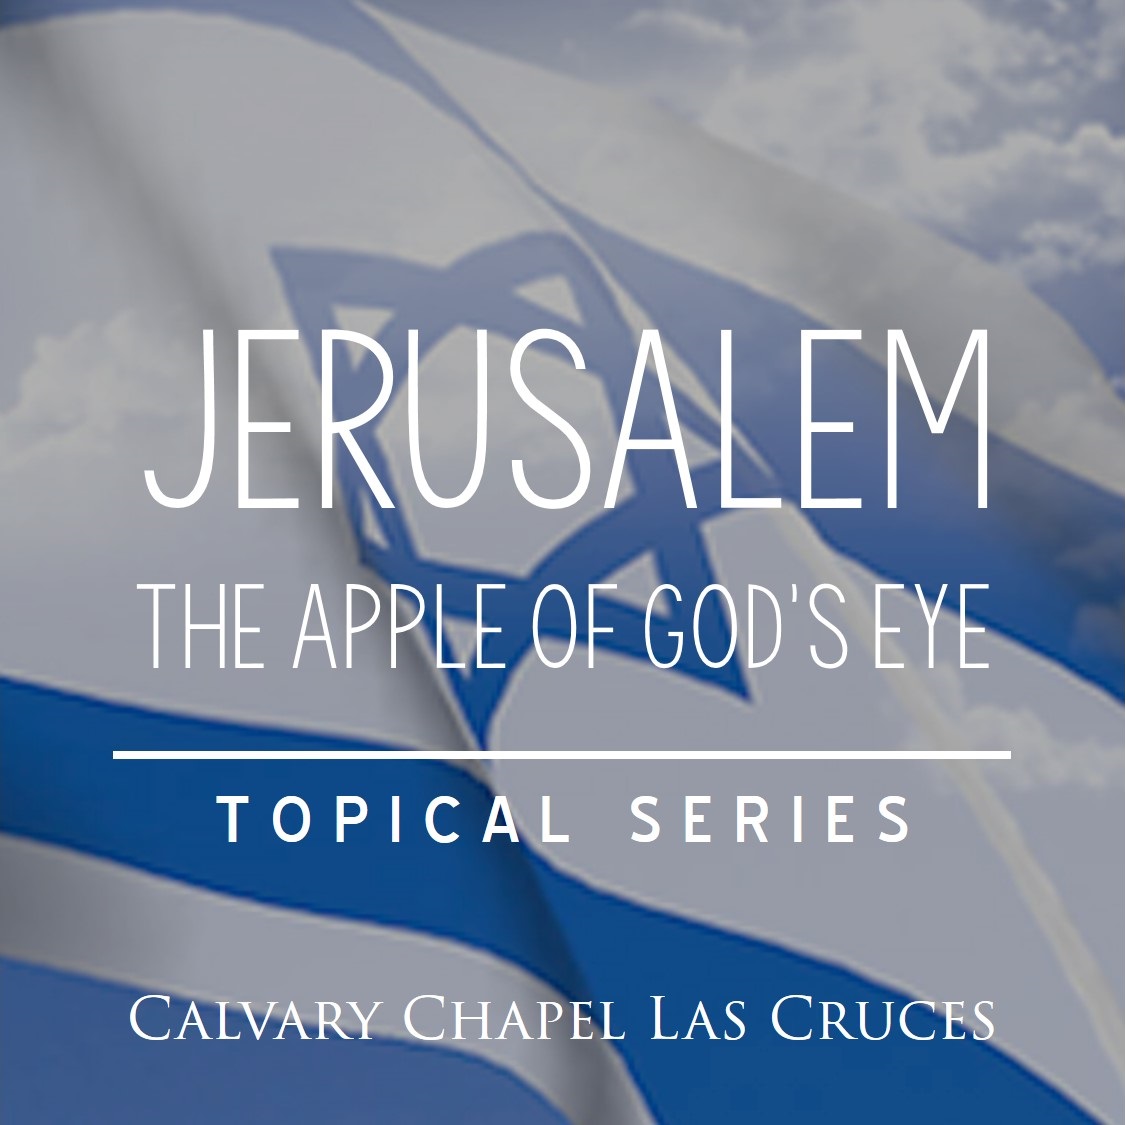 Jerusalem: The Apple of God’s Eye, Part 1